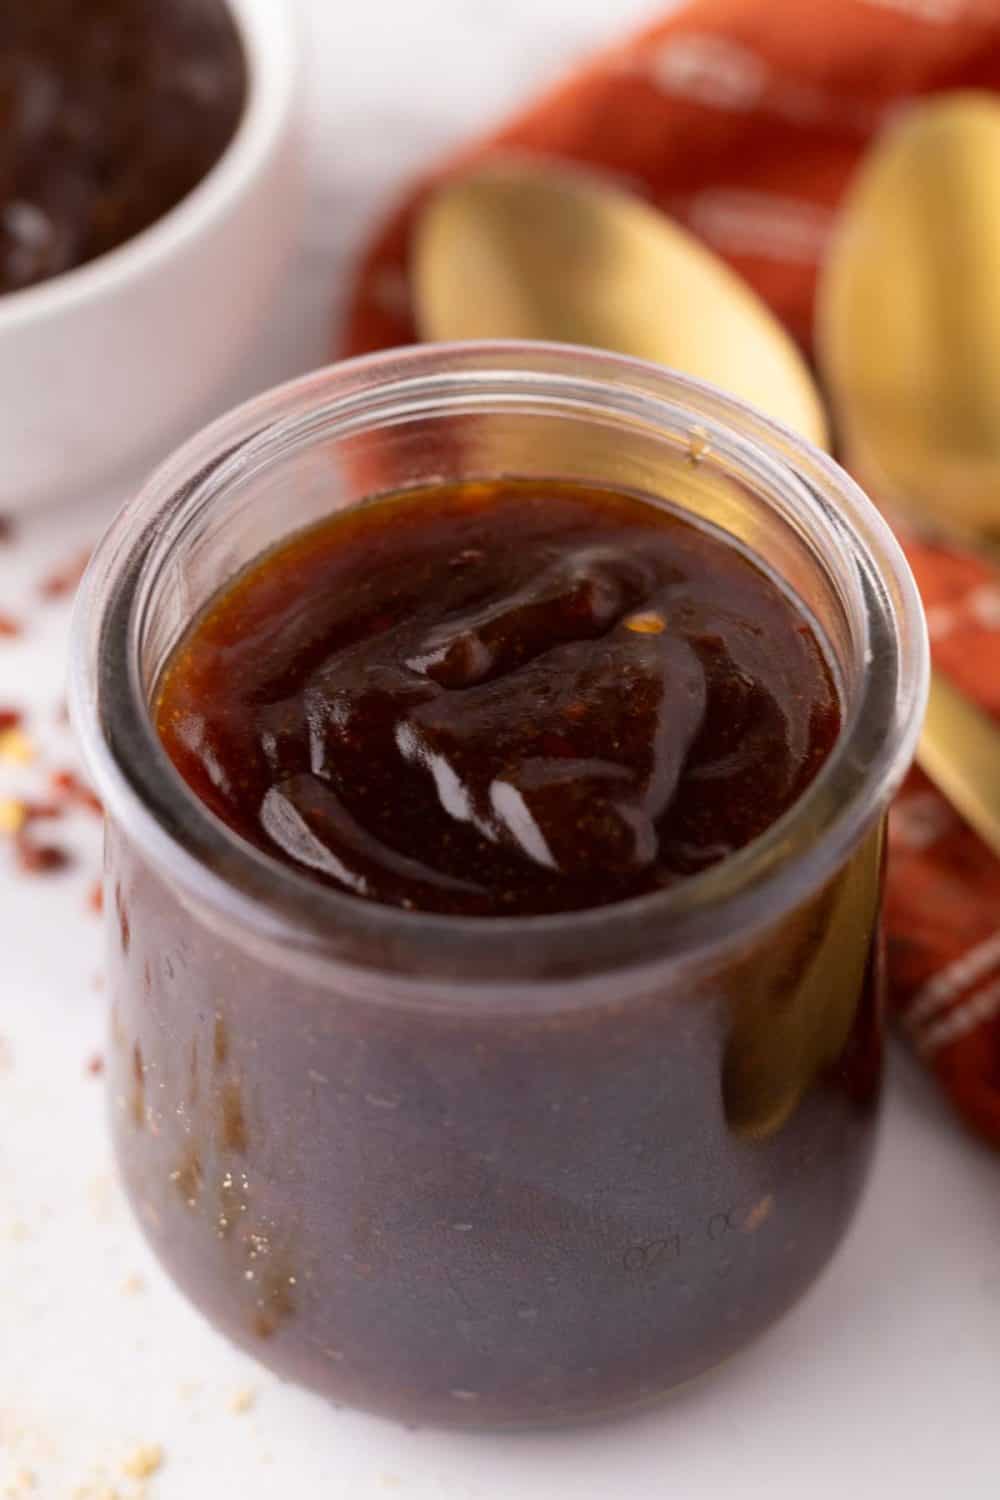 teriyaki sauce in a small glass jar.